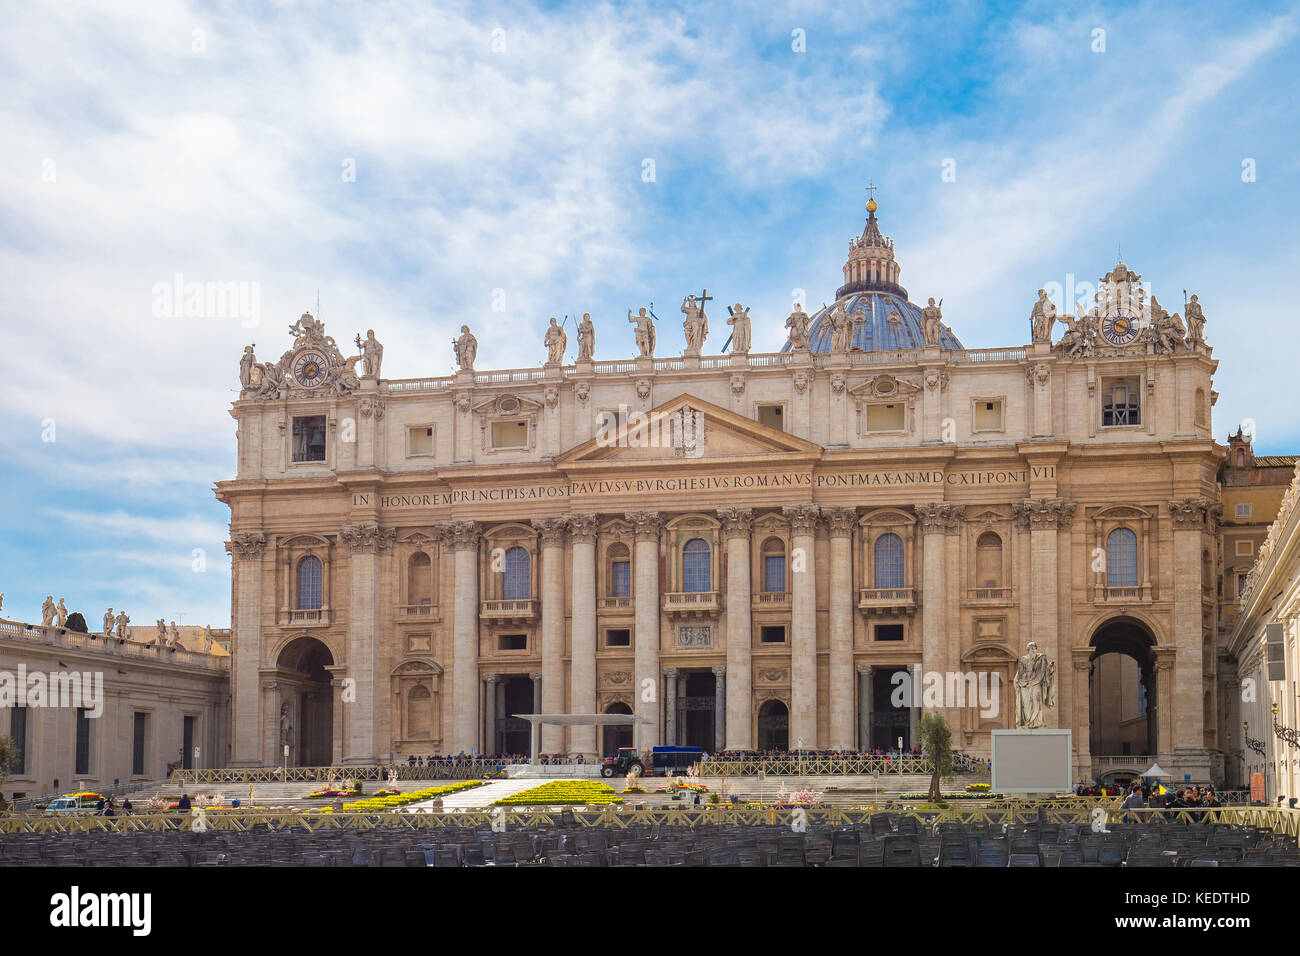 La Basilica Papale di San Pietro presso lo Stato della Città del Vaticano a Roma, Italia. Foto Stock